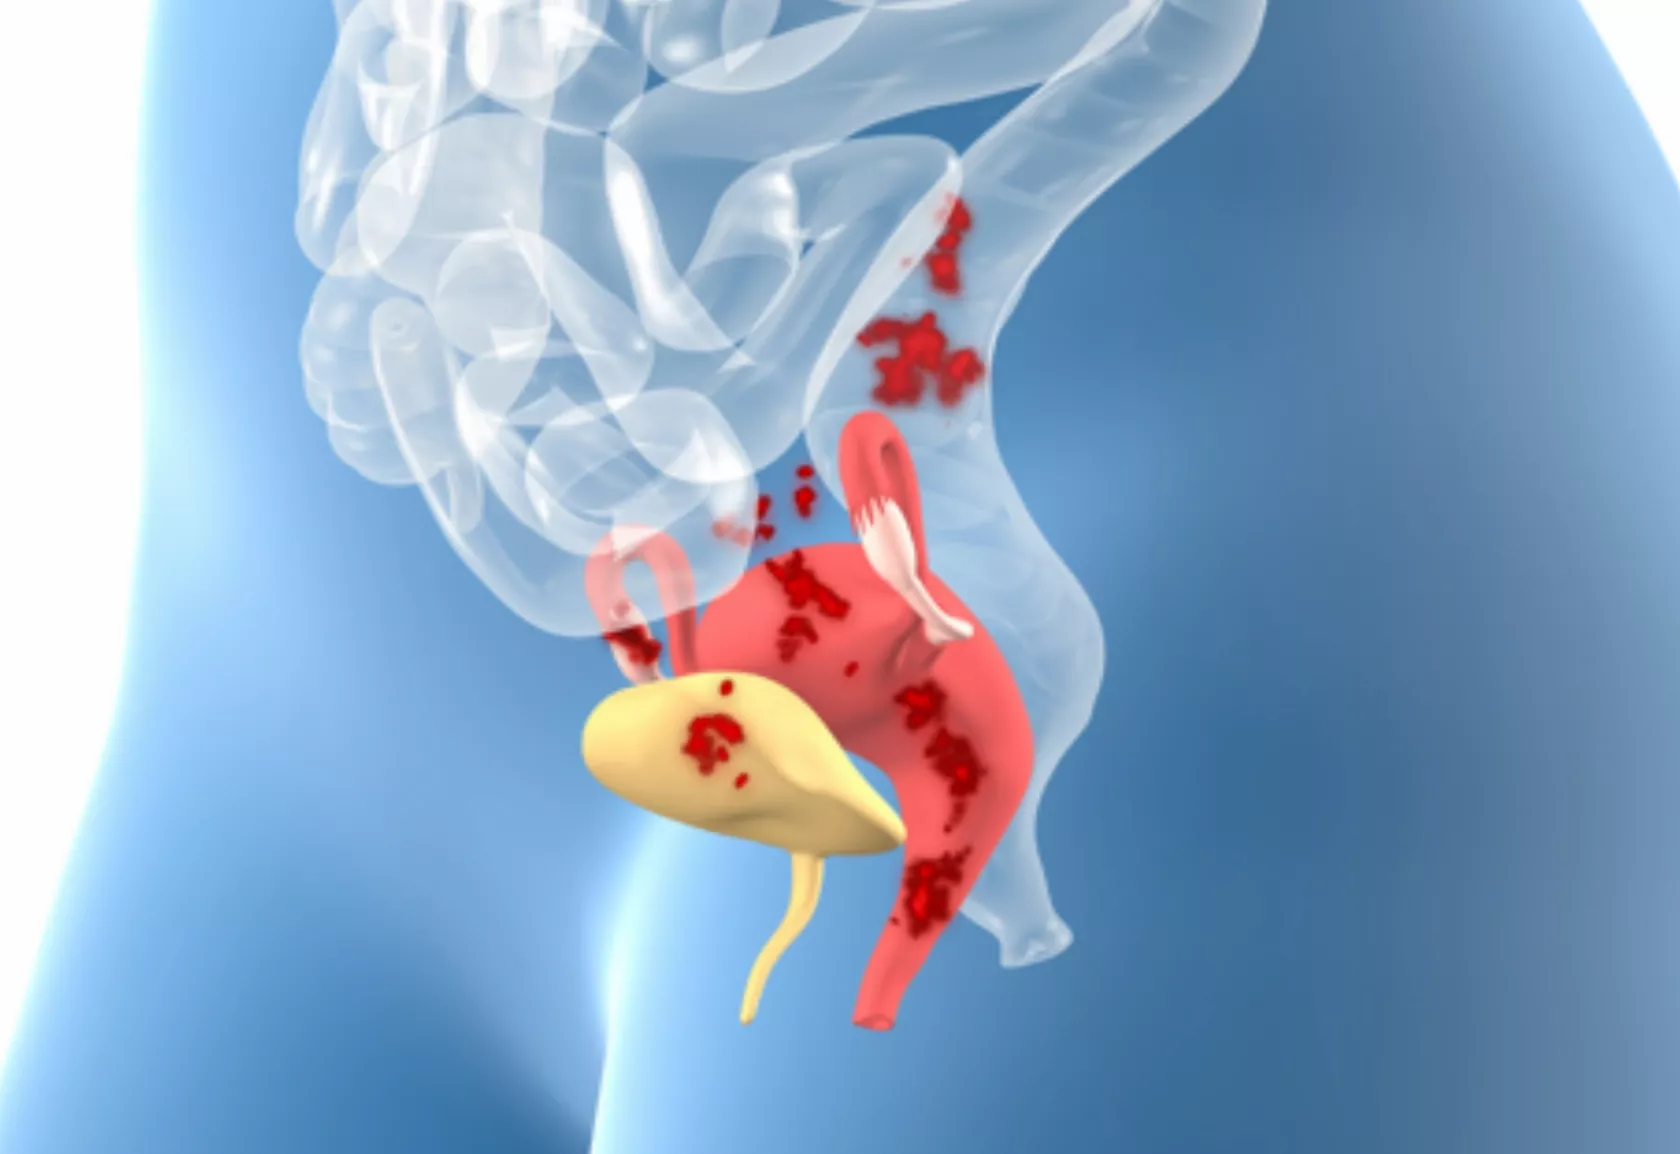 Schematische Darstellung des Unterbauchs einer Frau mit Endometriose-Befall